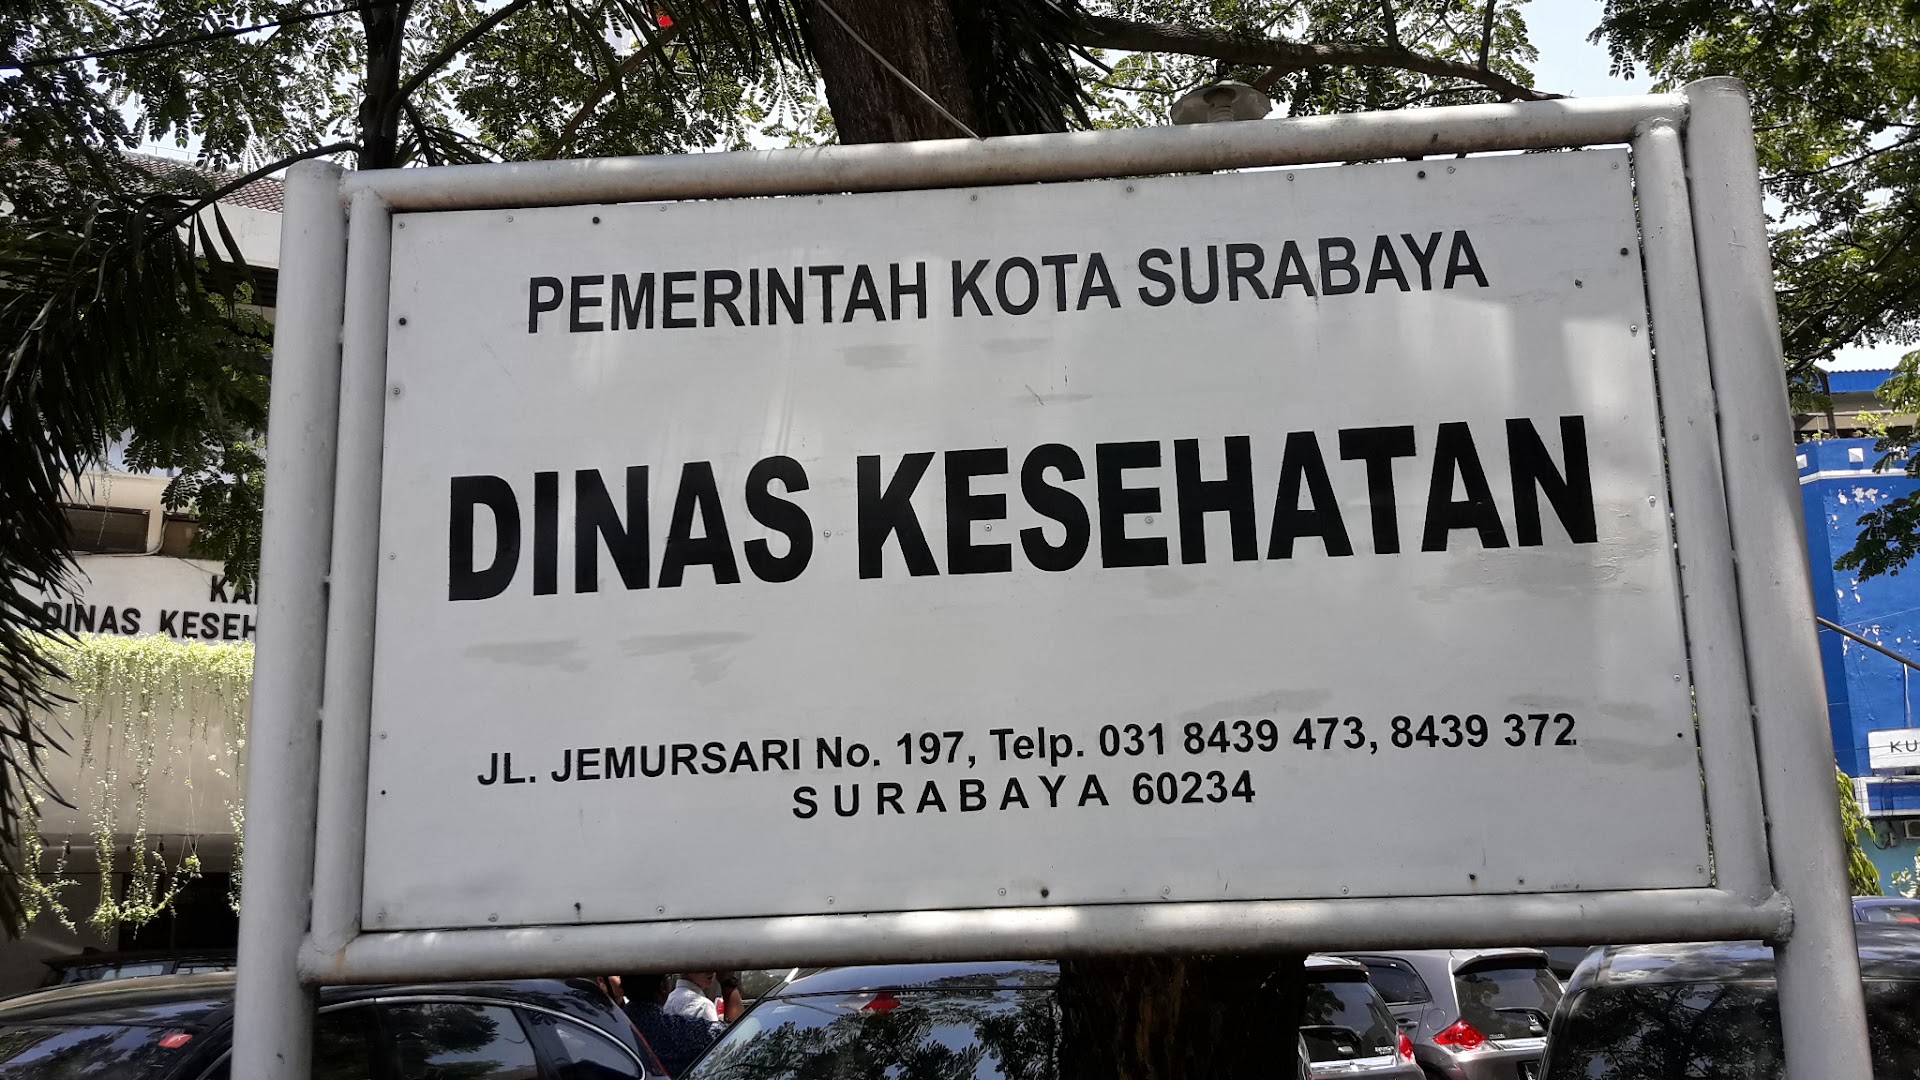 Dinas Kesehatan Kota Surabaya Photo